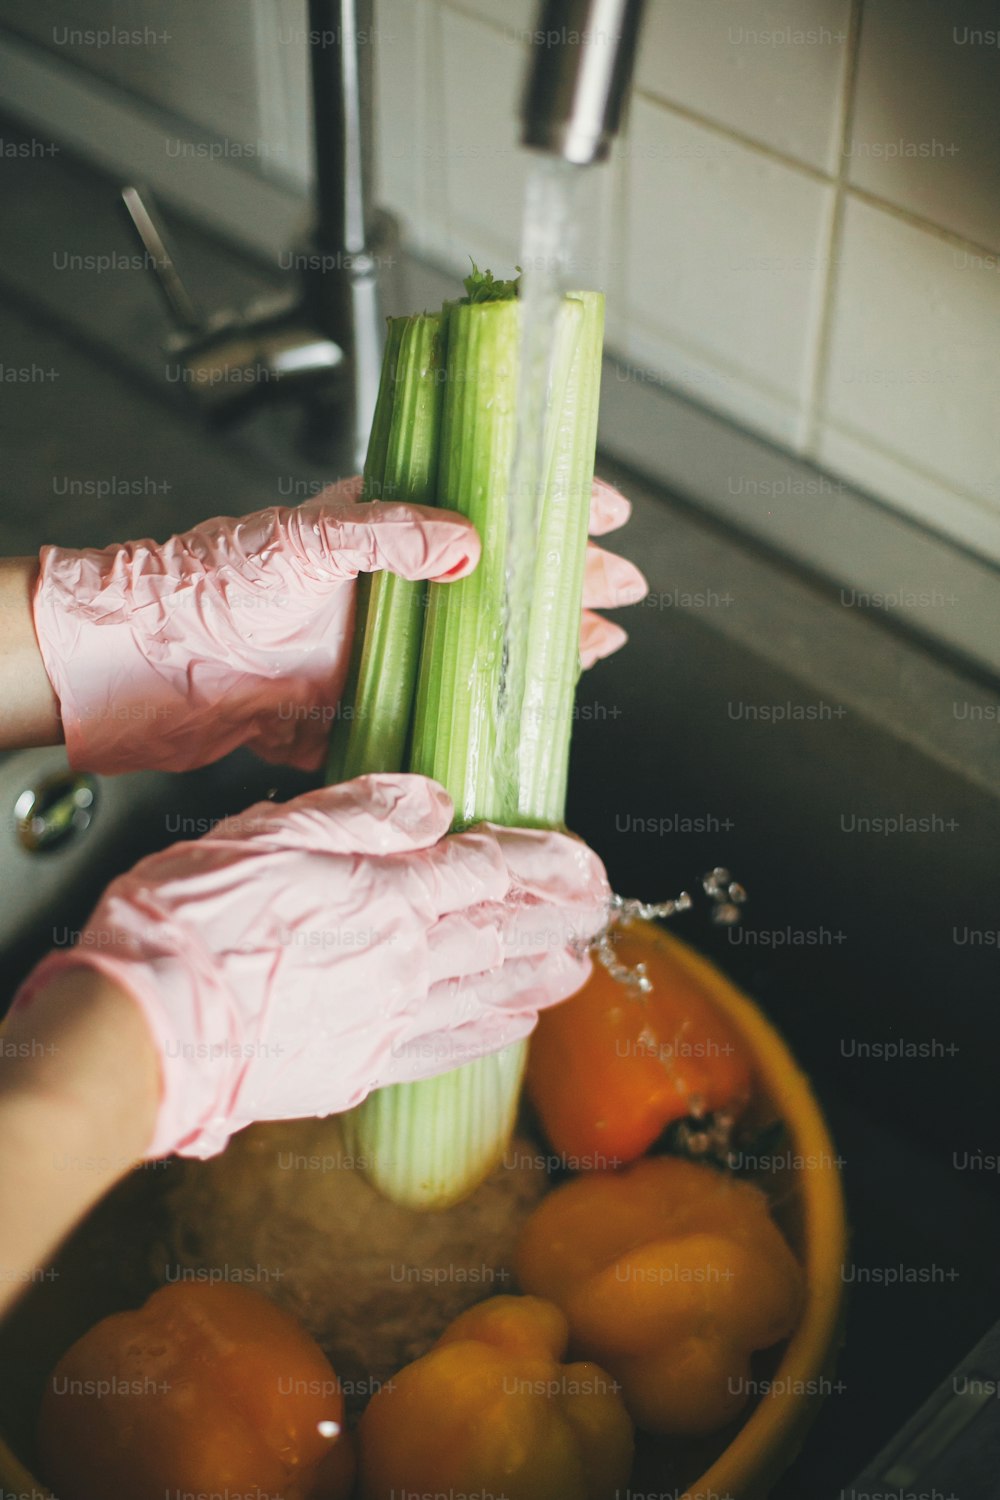 Lavar verduras. Manos con guantes rosas lavando apio en un arroyo de agua en el fregadero durante la epidemia de virus. Mujer limpiando verduras frescas, preparándose para cocinar la comida en la cocina moderna